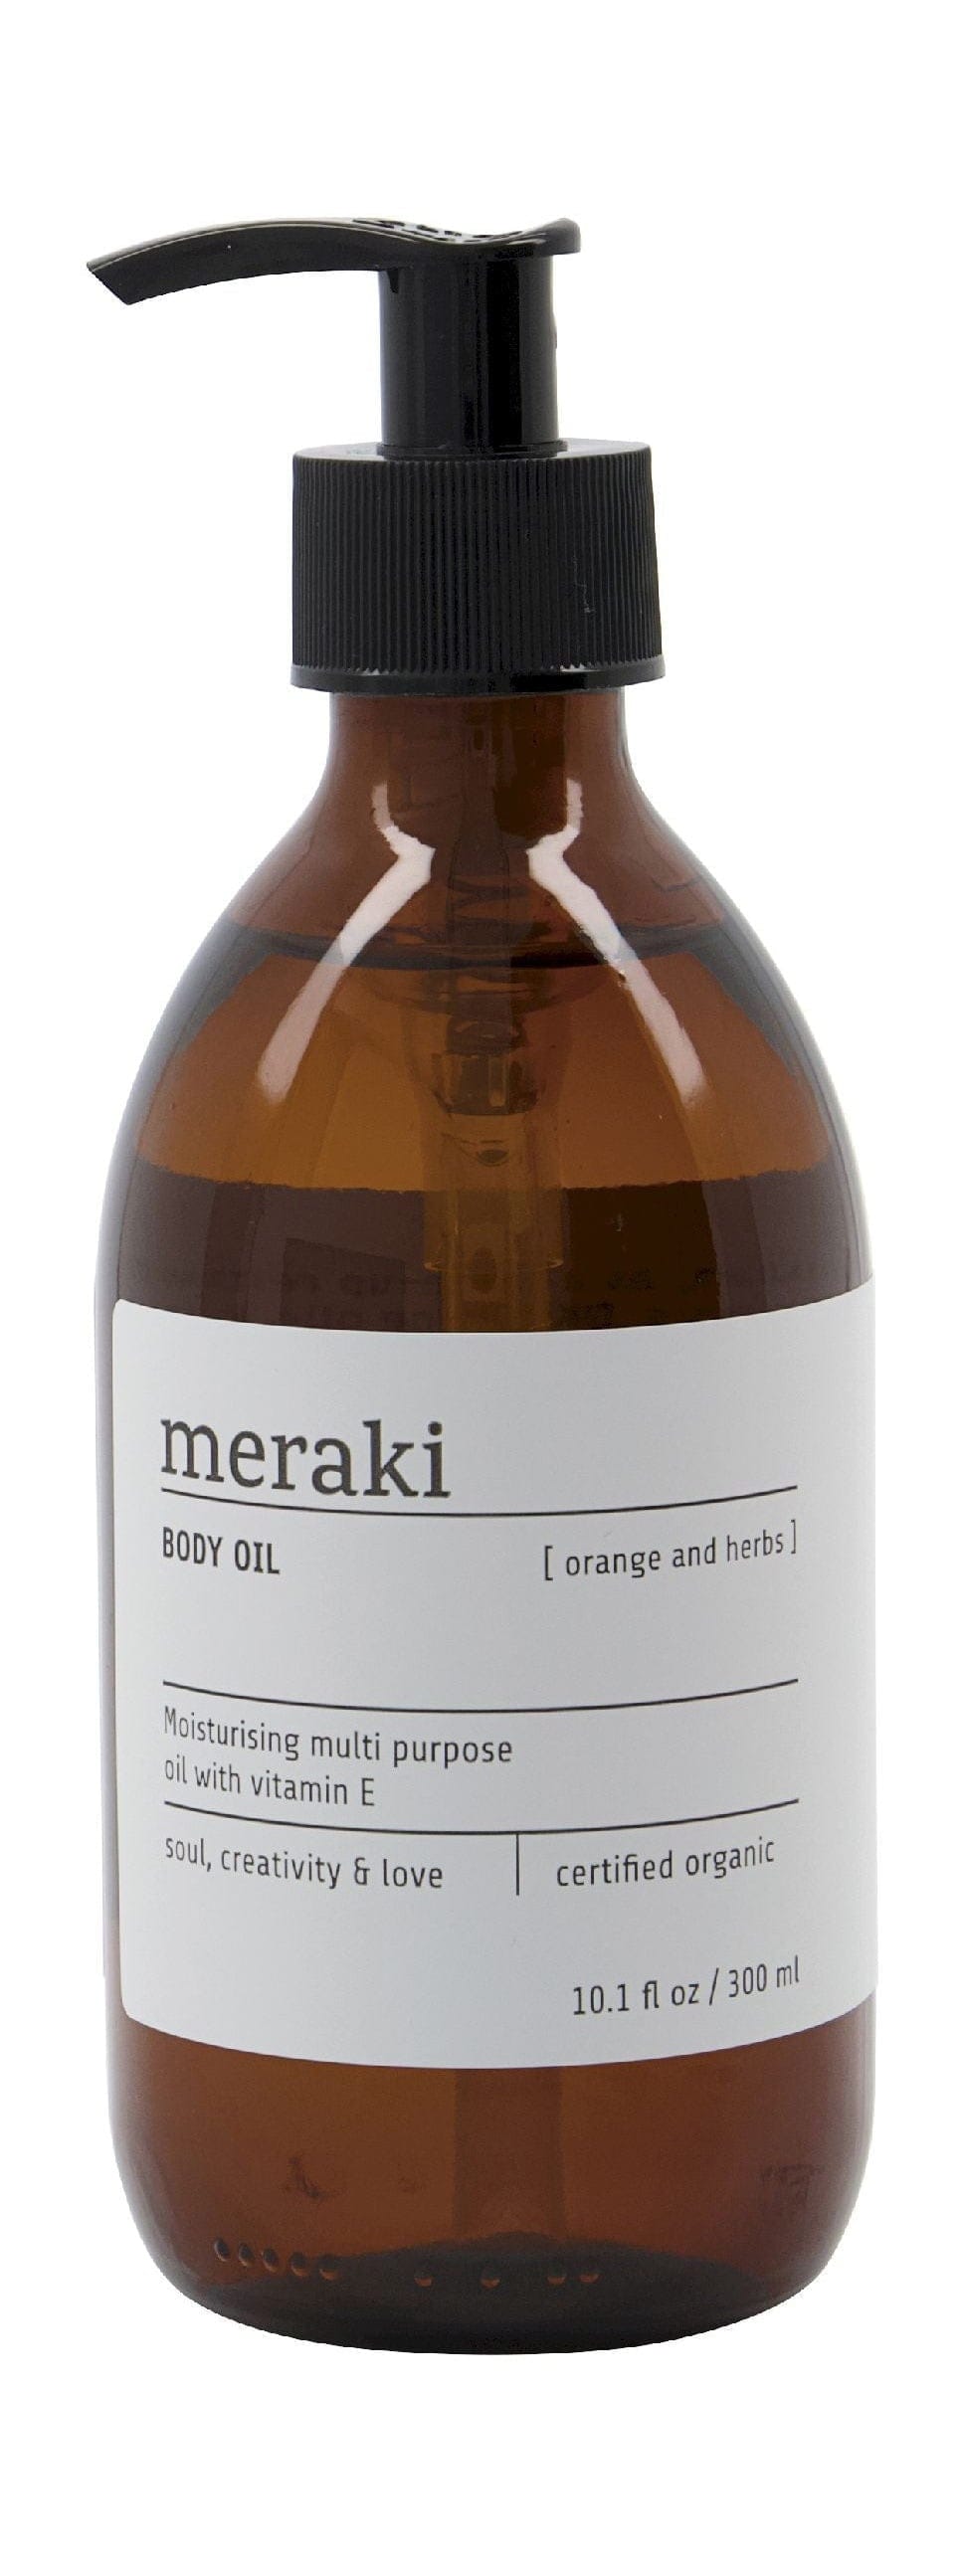 Meraki Body Huile 300 ml, orange et herbes